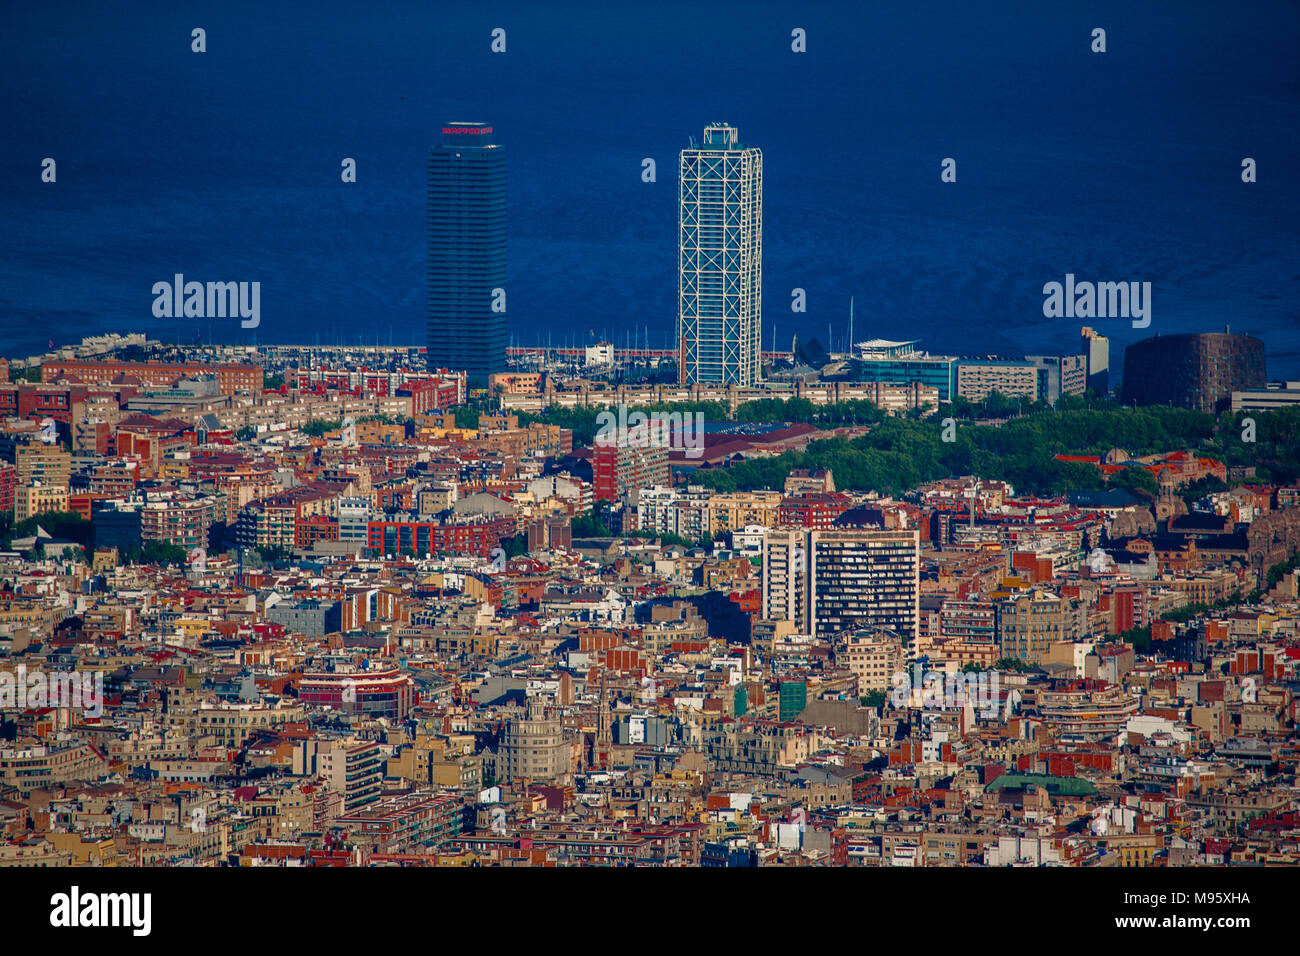 Une vue à longue distance de Barcelone, avec ses célèbres tours jumelles de Mapfre et l'hôtel Arts poussé jusqu'à l'encontre de la mer Méditerranée, Barcelone, Espagne Banque D'Images